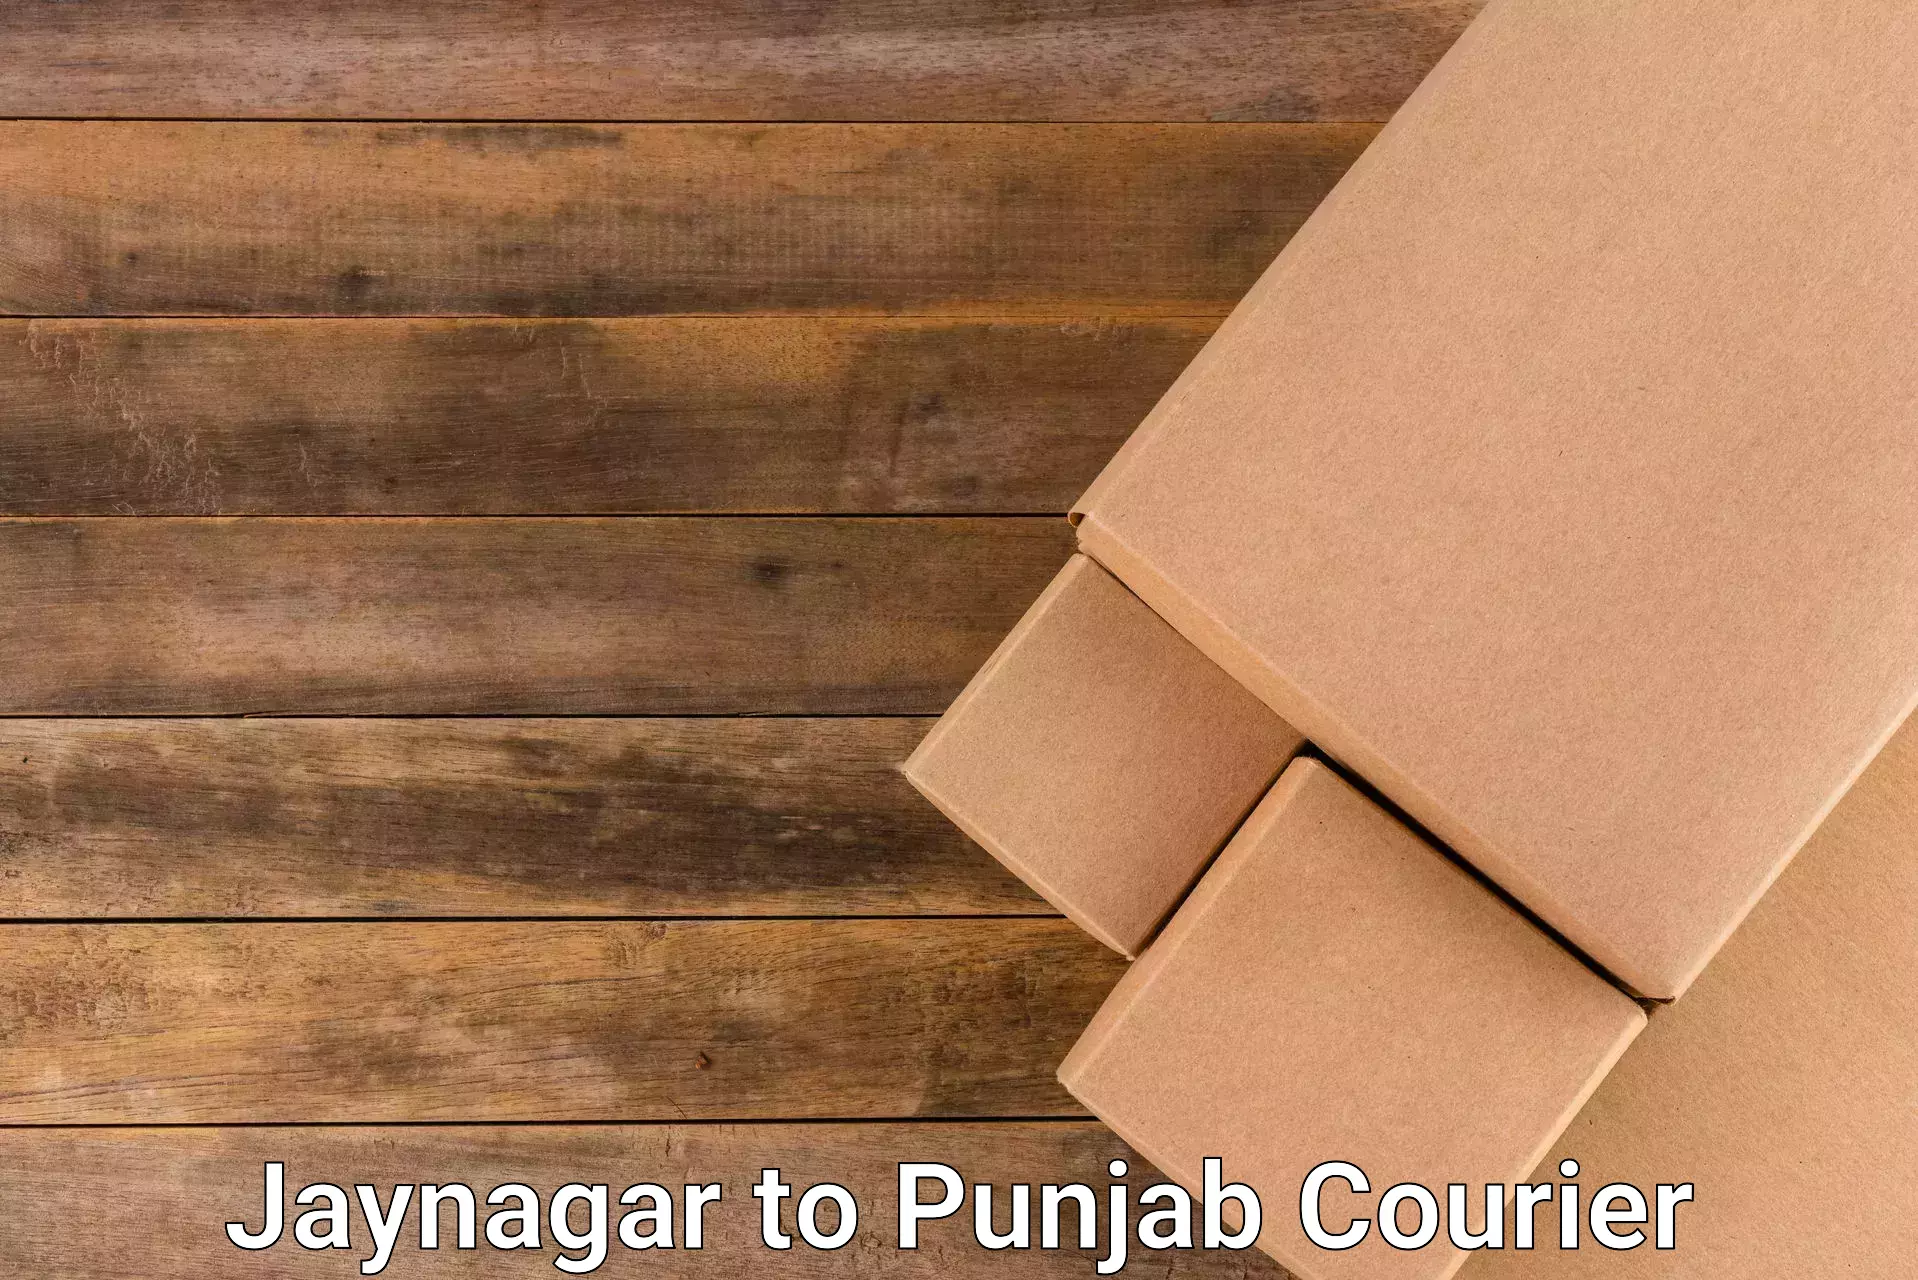 Streamlined shipping process Jaynagar to Punjab